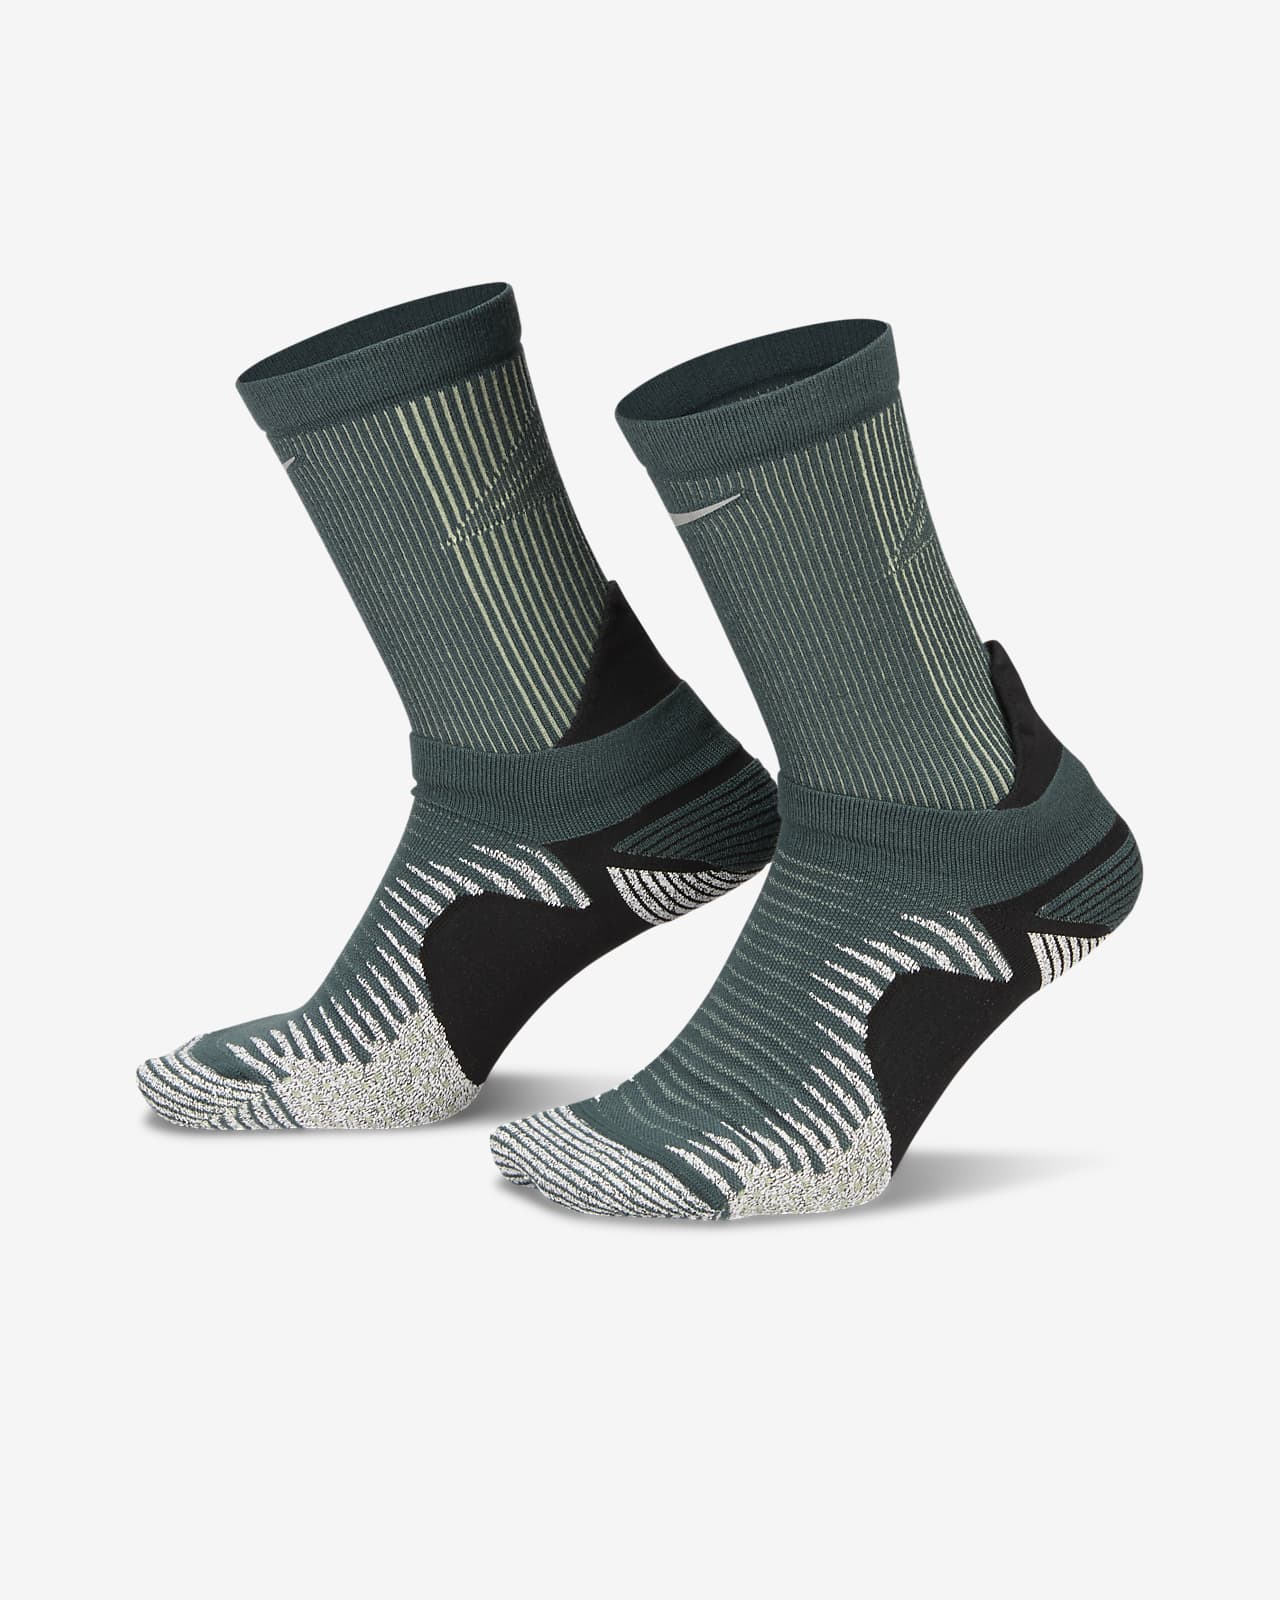 Nike Dri-FIT Trail Running Crew Socks